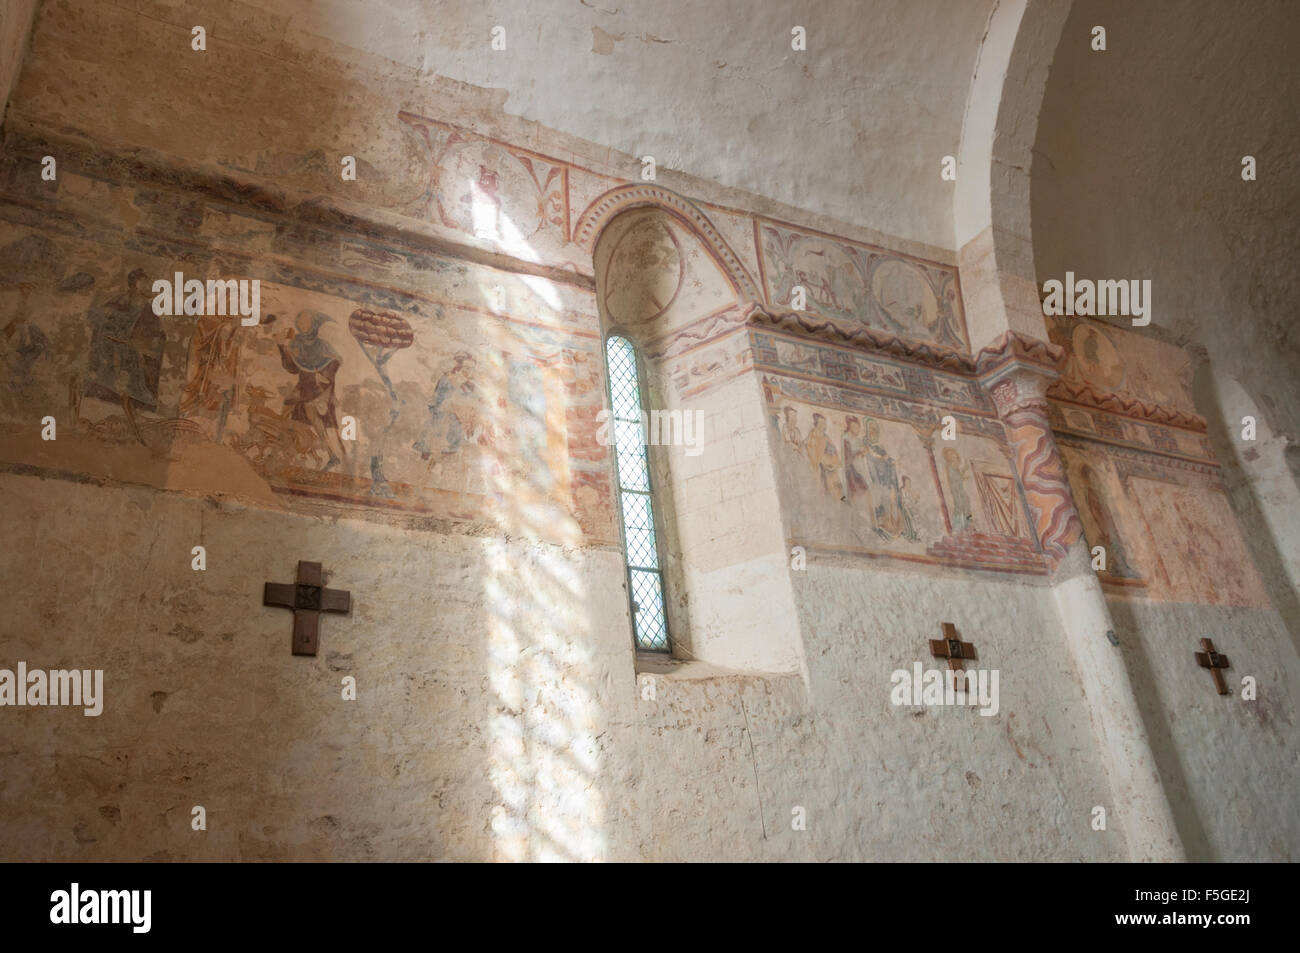 Frescos at the Eglise du Vieux, Pouzauges, Vendee, France Stock Photo